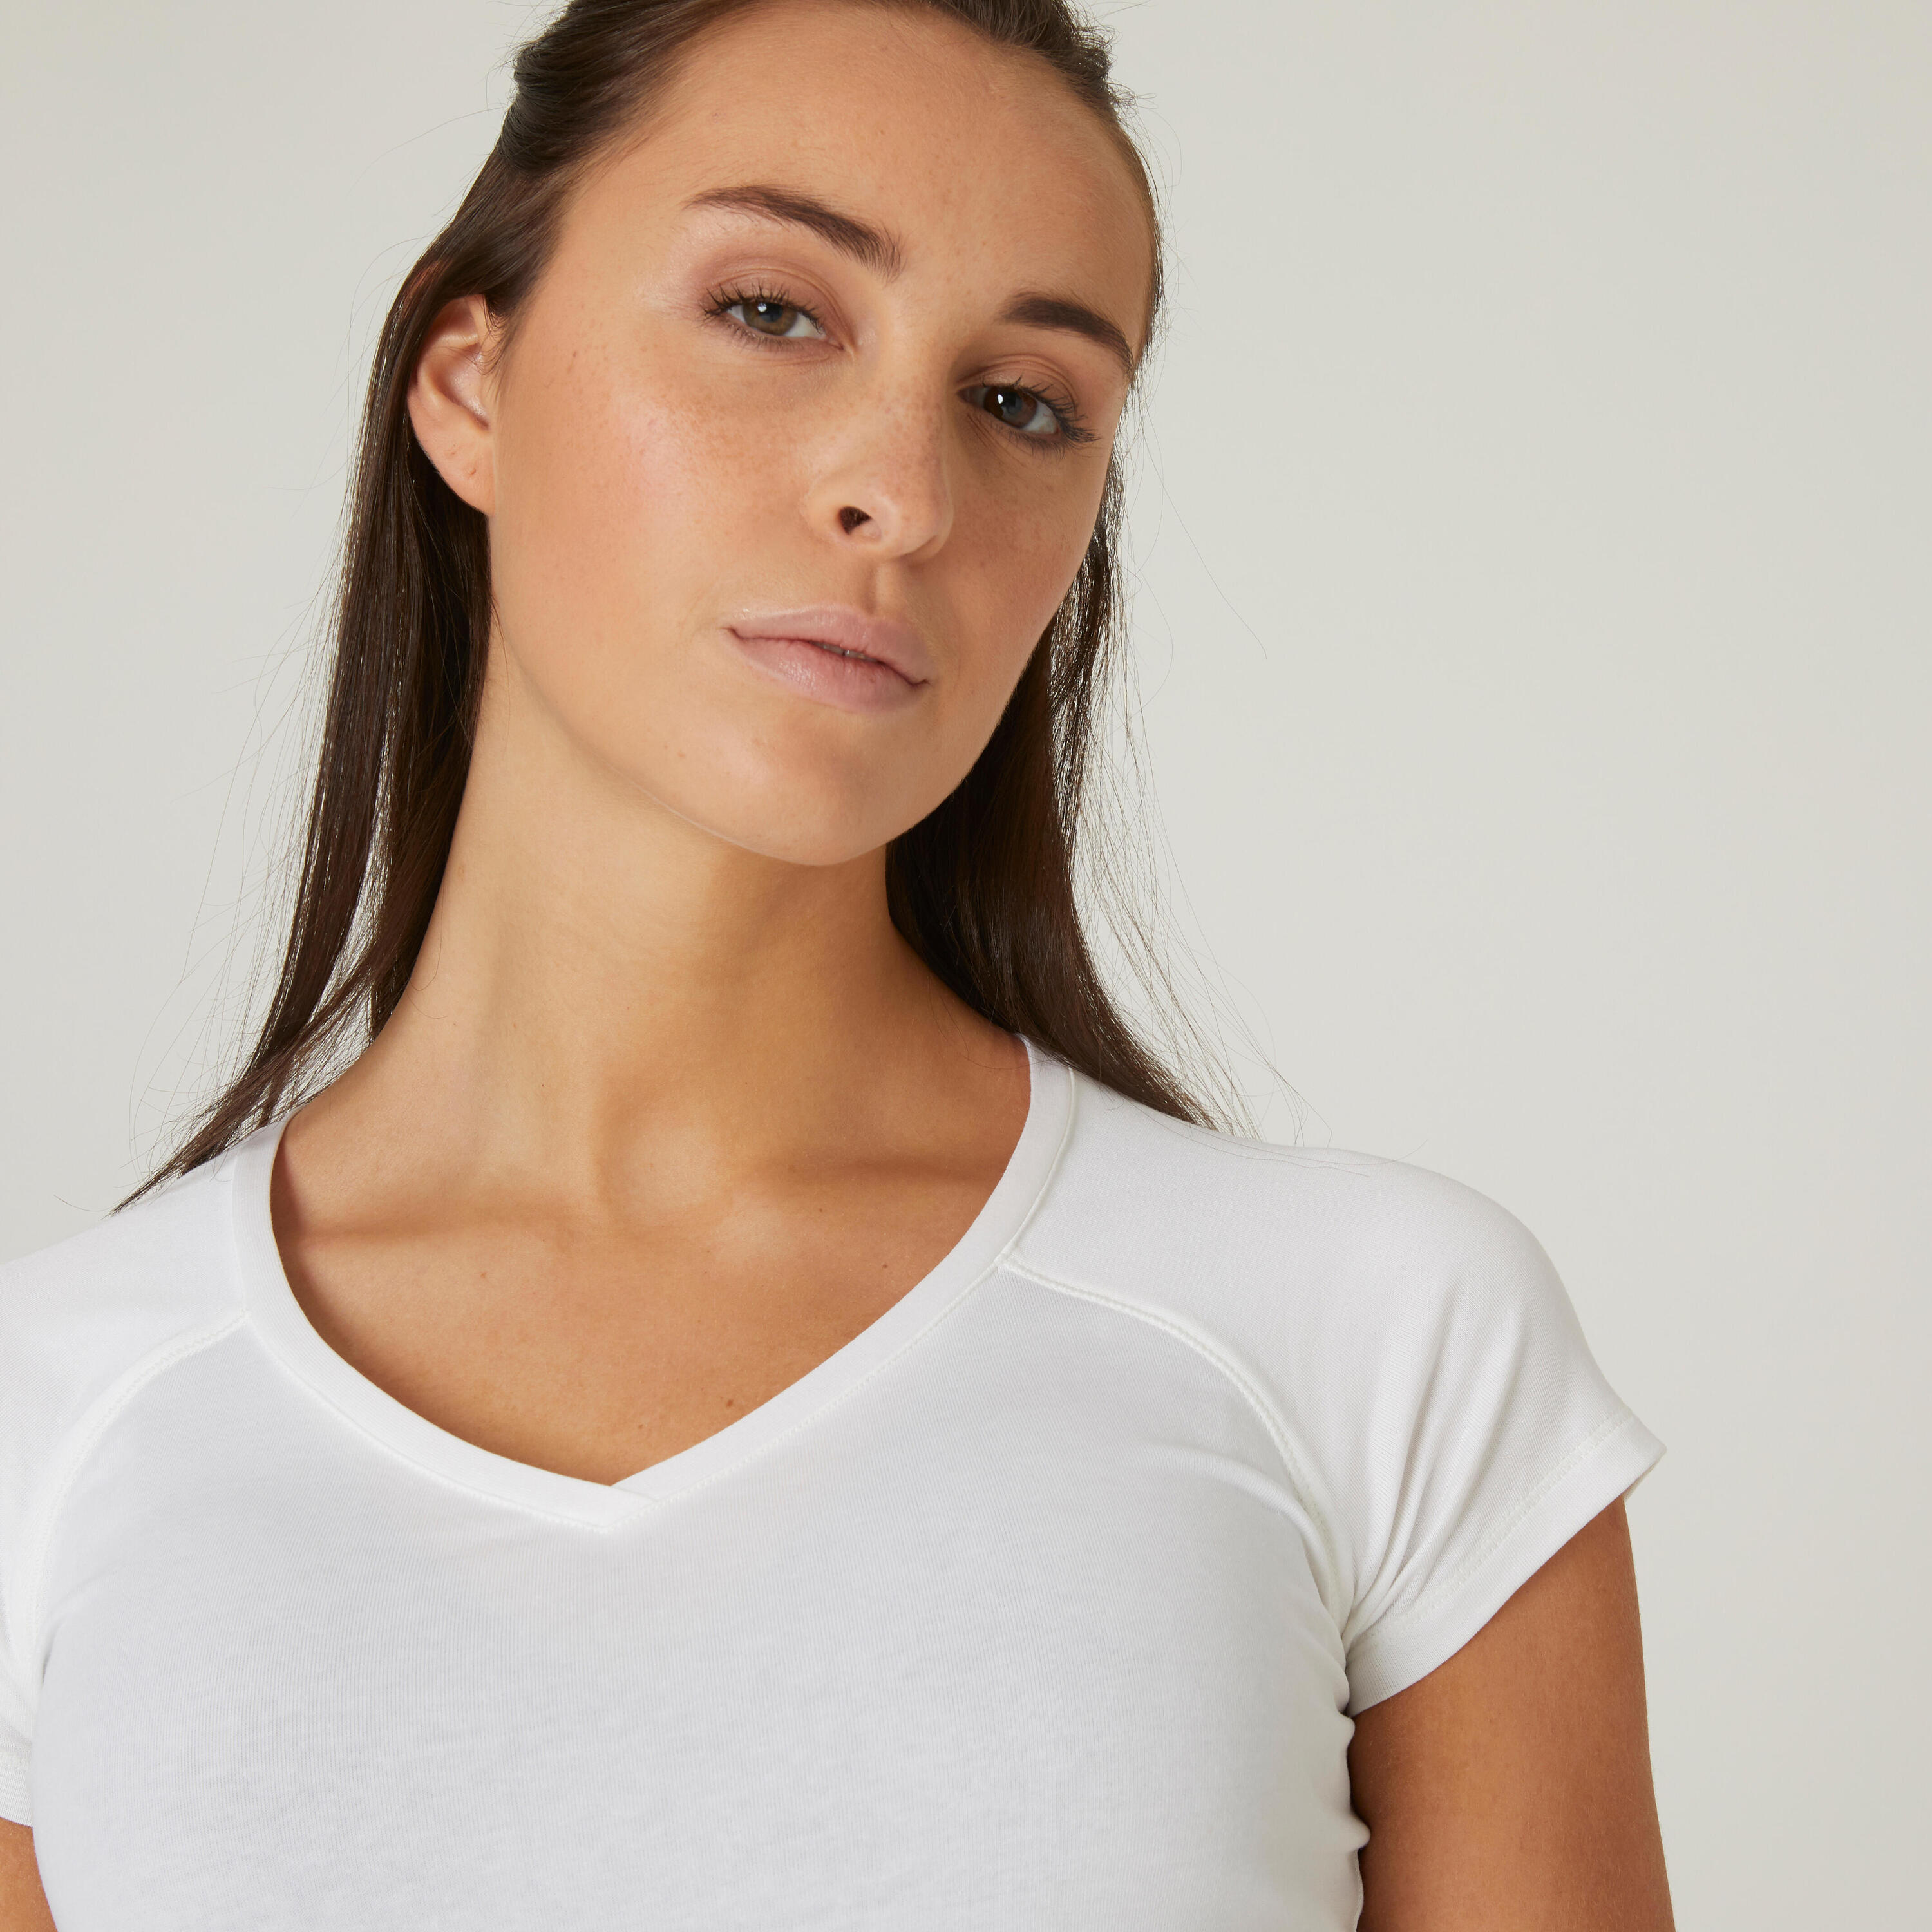 Women's V-Neck Fitness T-Shirt 500 - Ice White 7/16